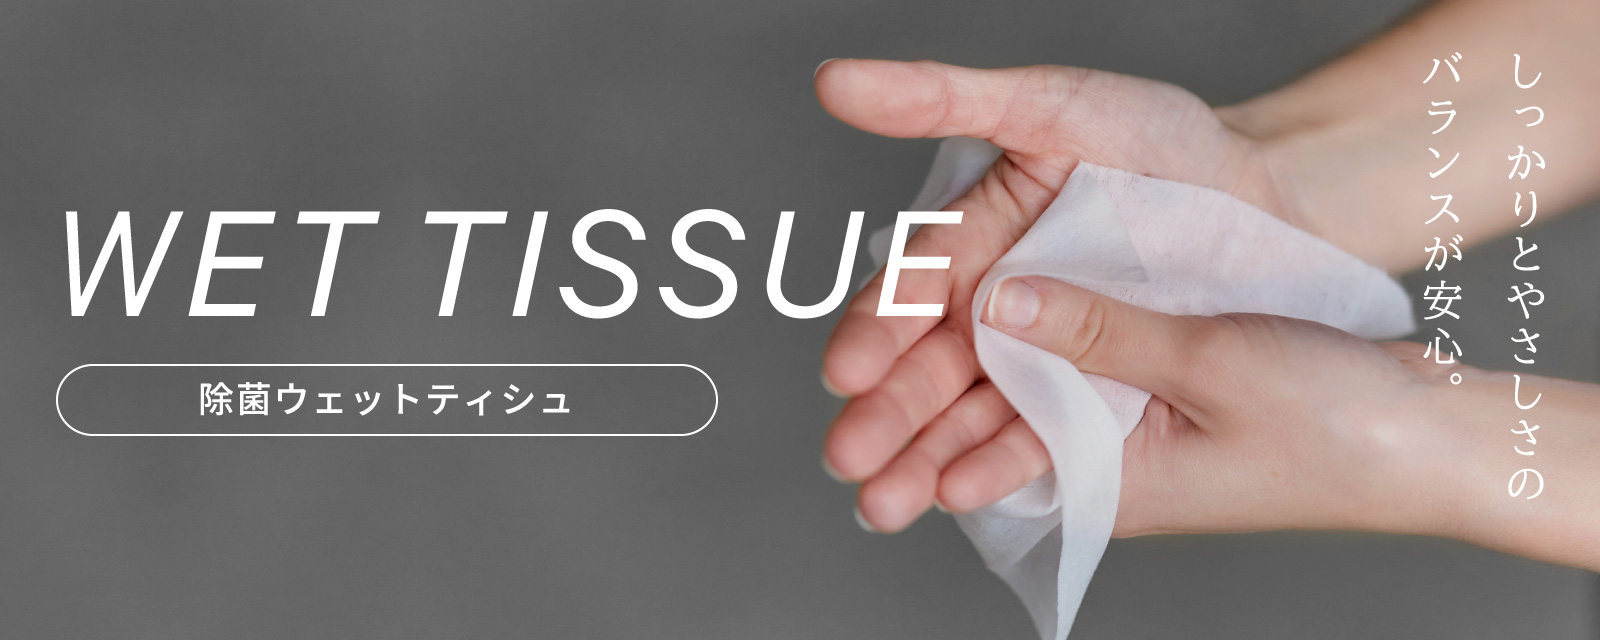 WET TISSUE 除菌ウェットティシュ しっかりとやさしさのバランスが安心。